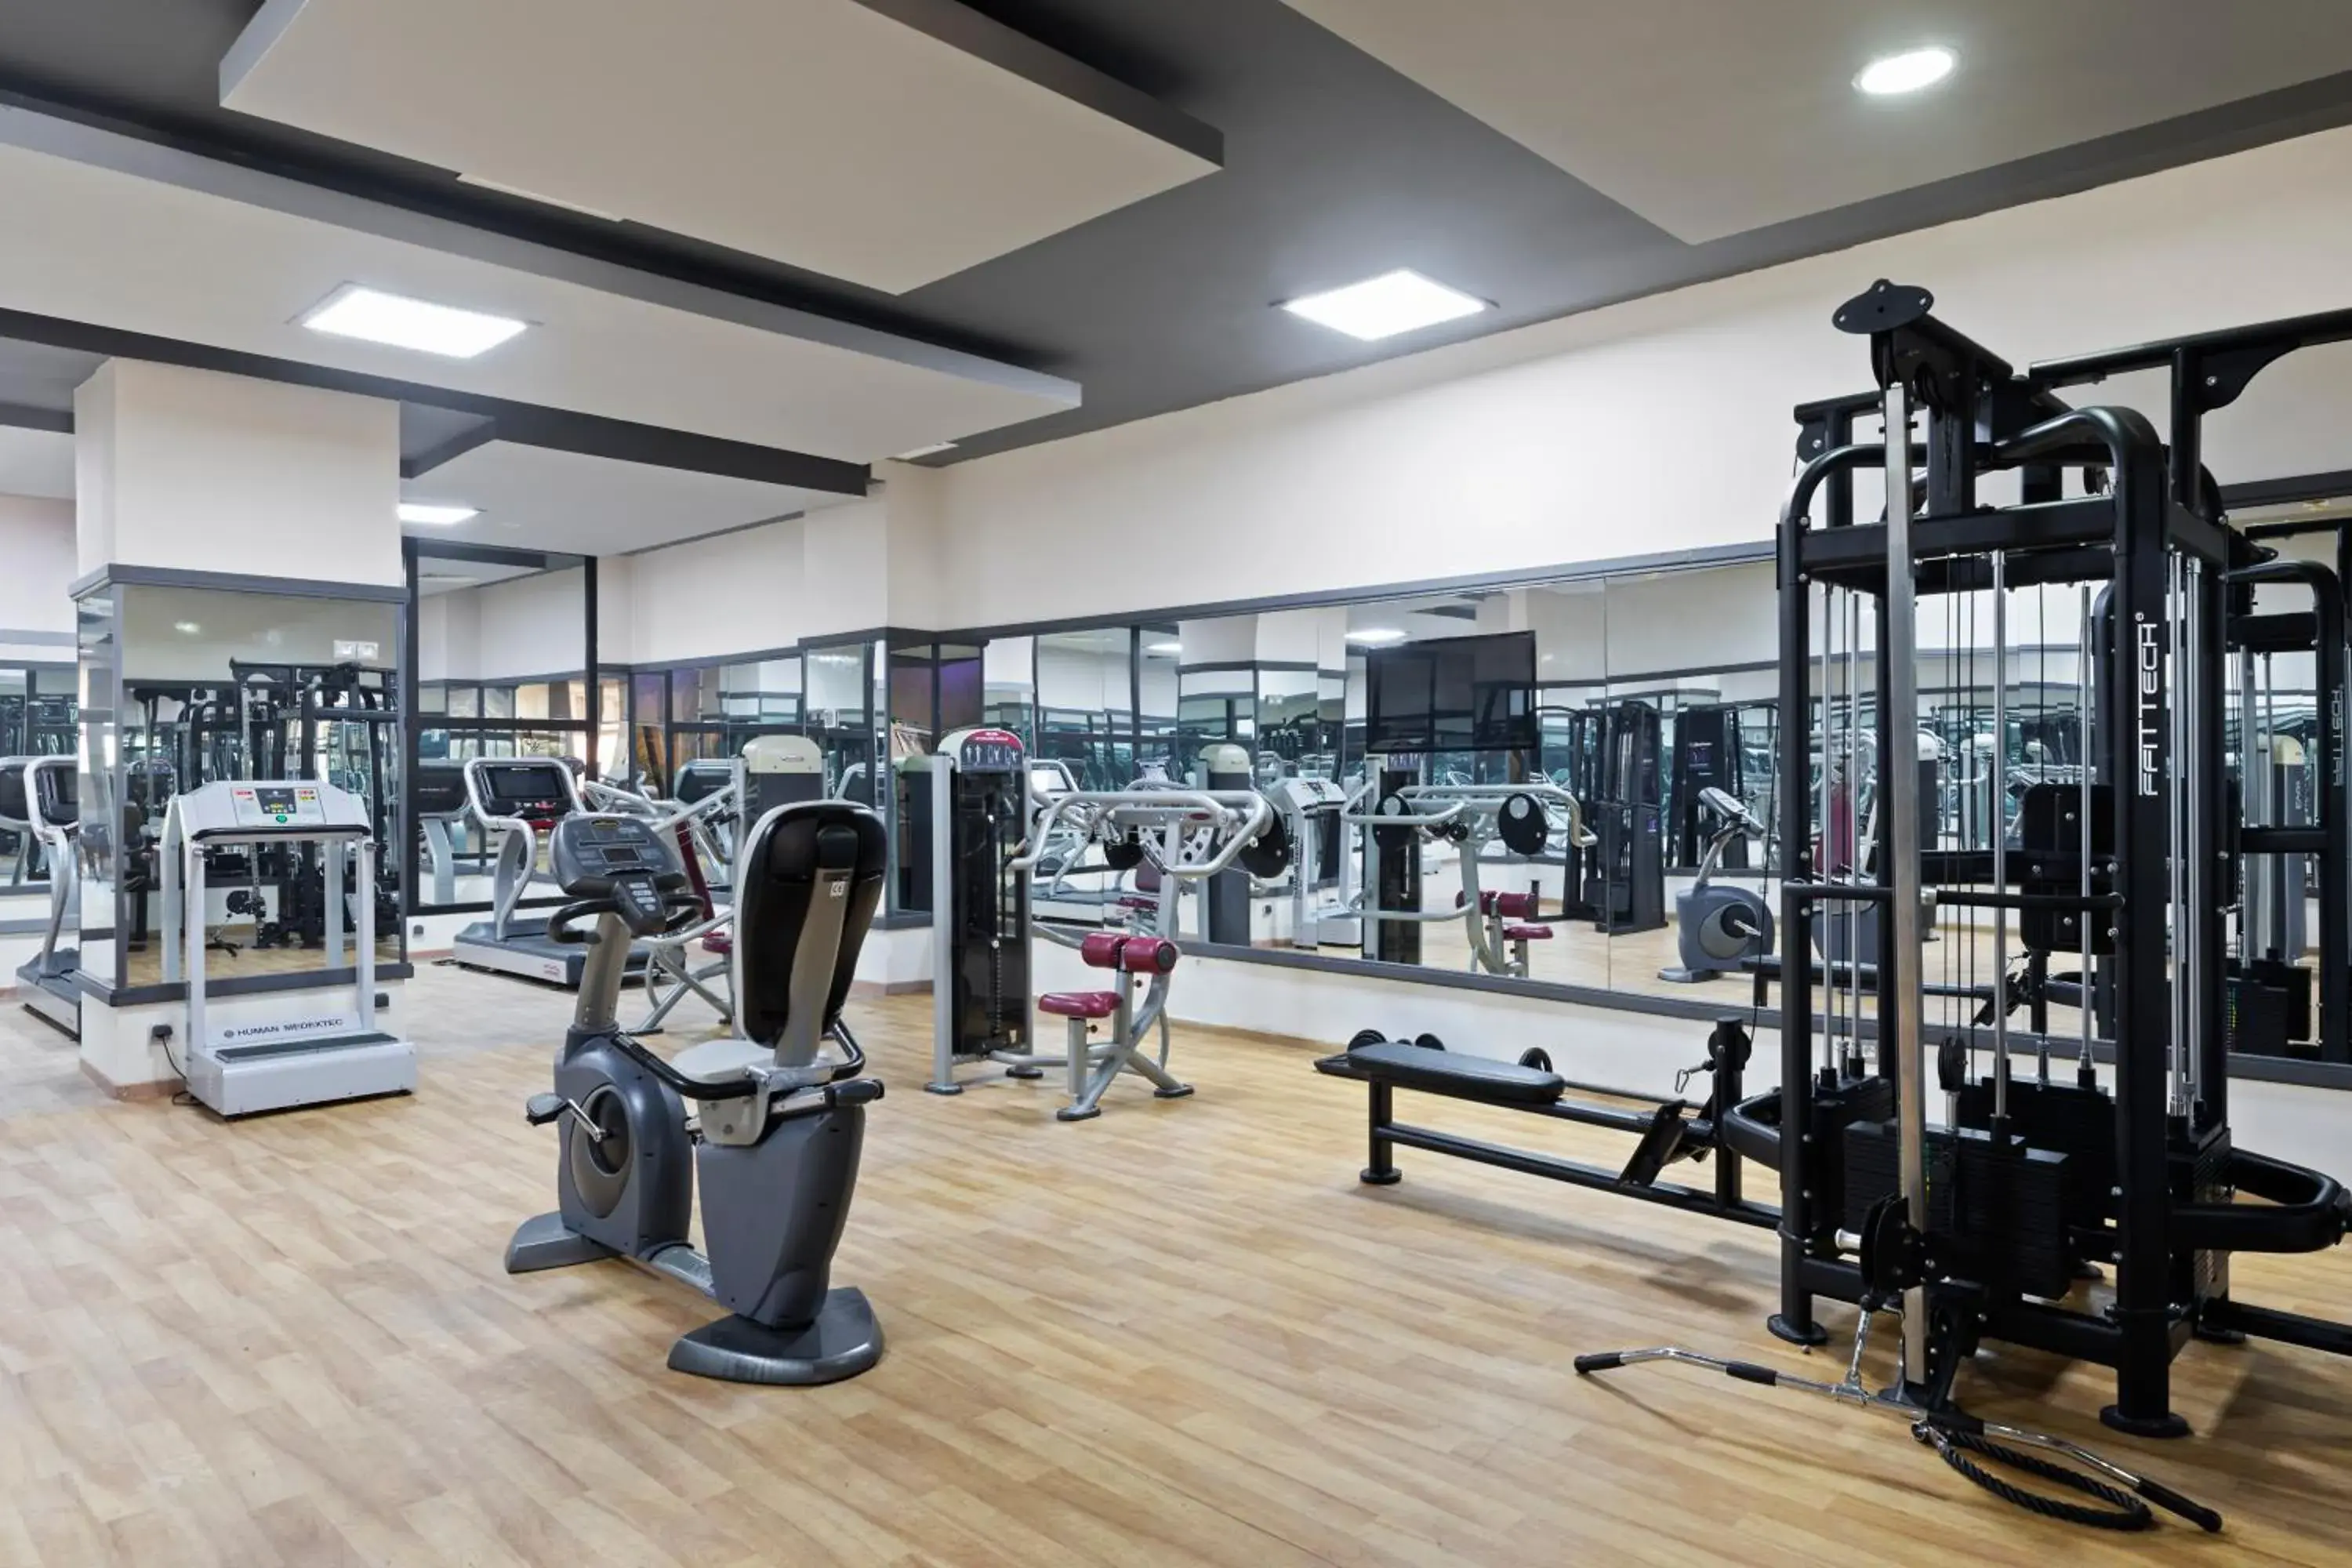 Fitness centre/facilities, Fitness Center/Facilities in Aqua Fun Club All inclusive